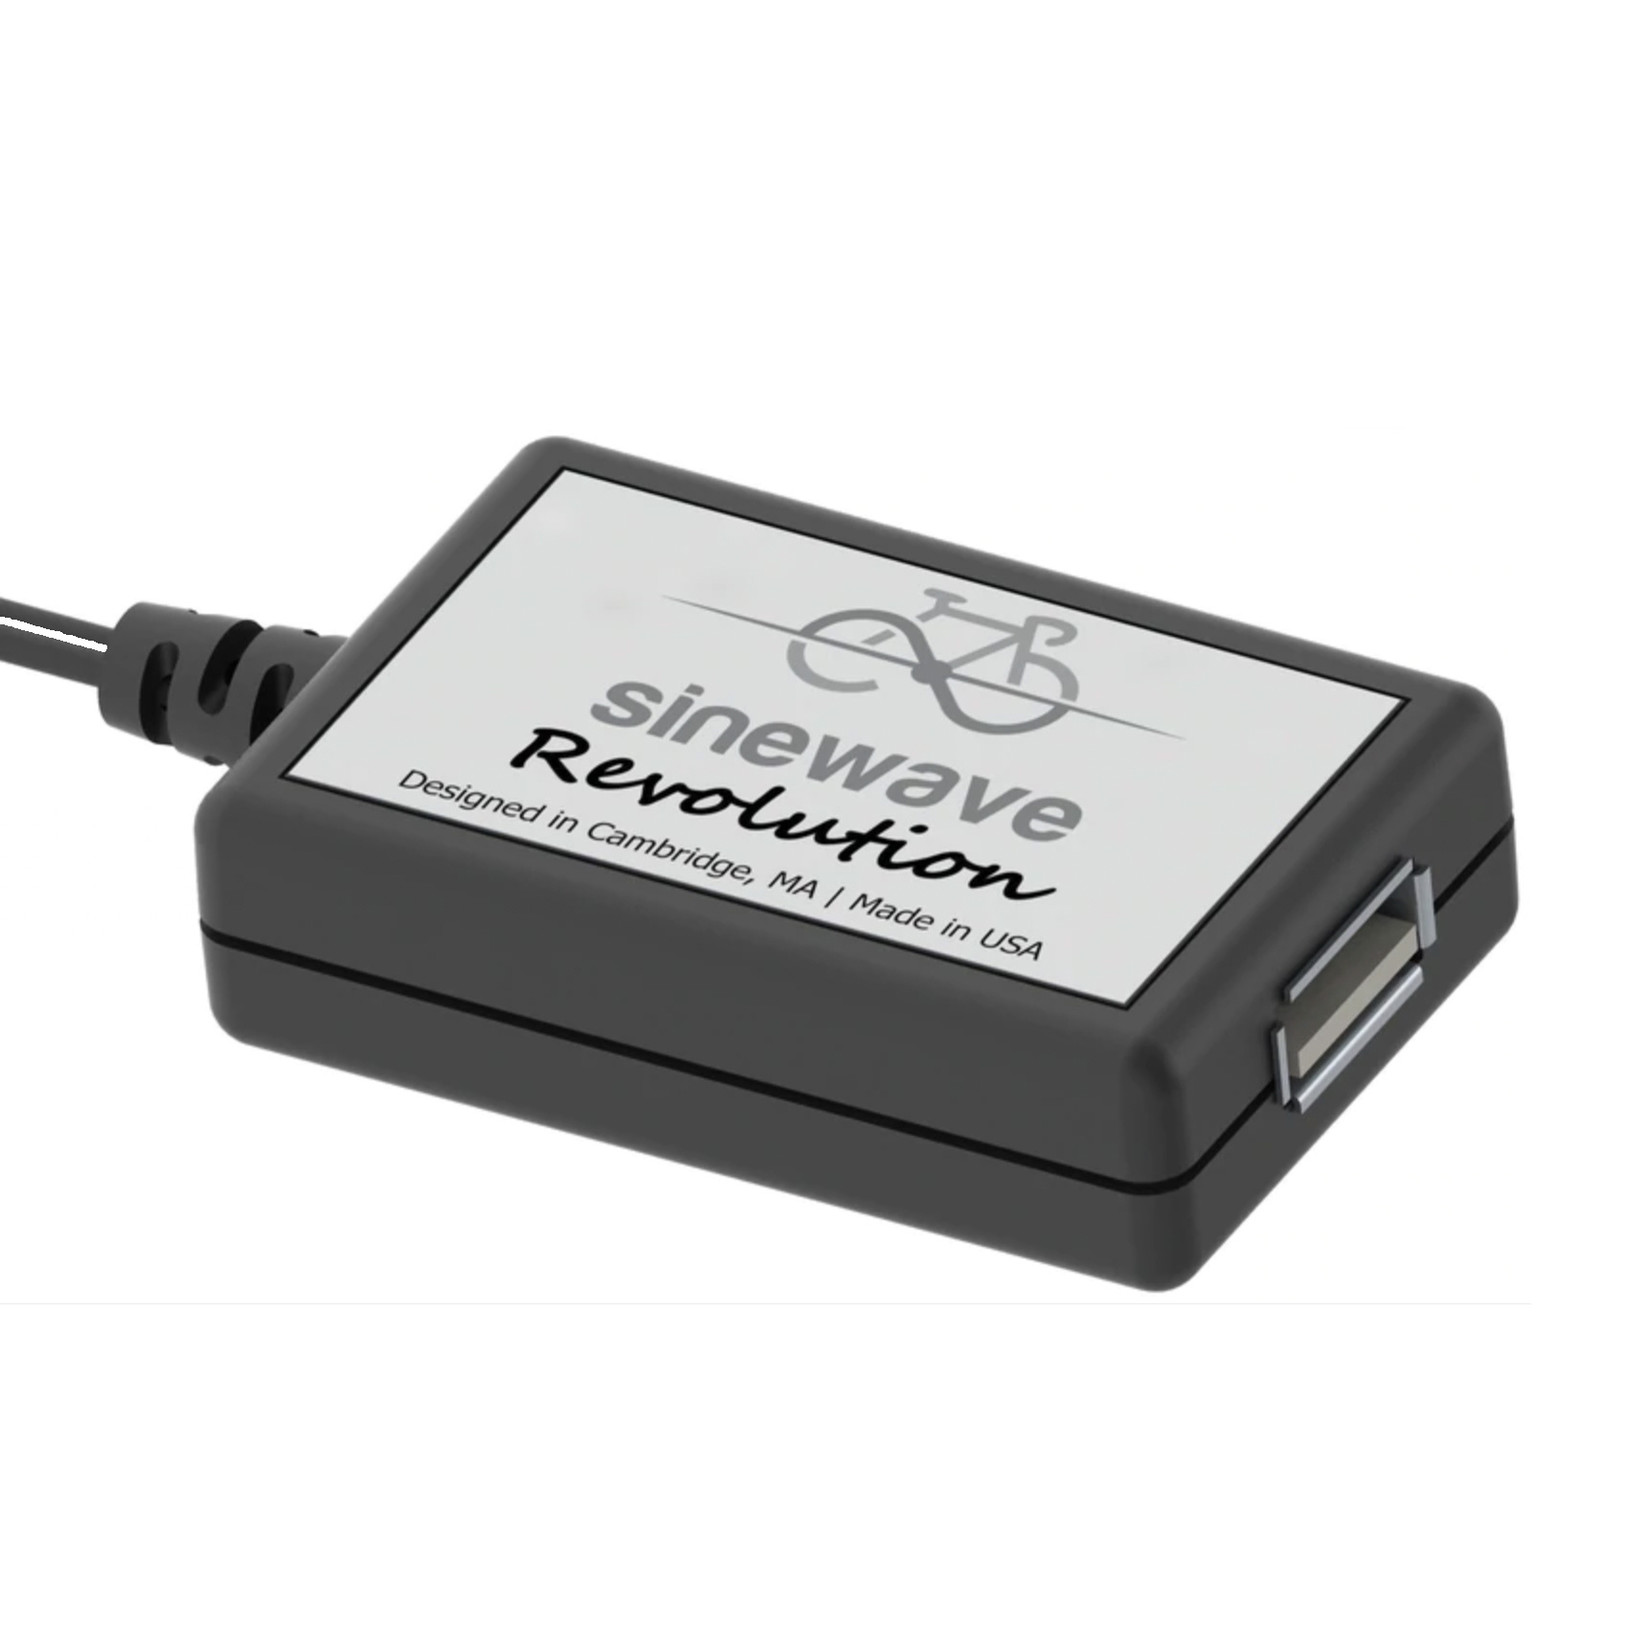 Sinewave Sinewave Revolution Dynamo USB Charger